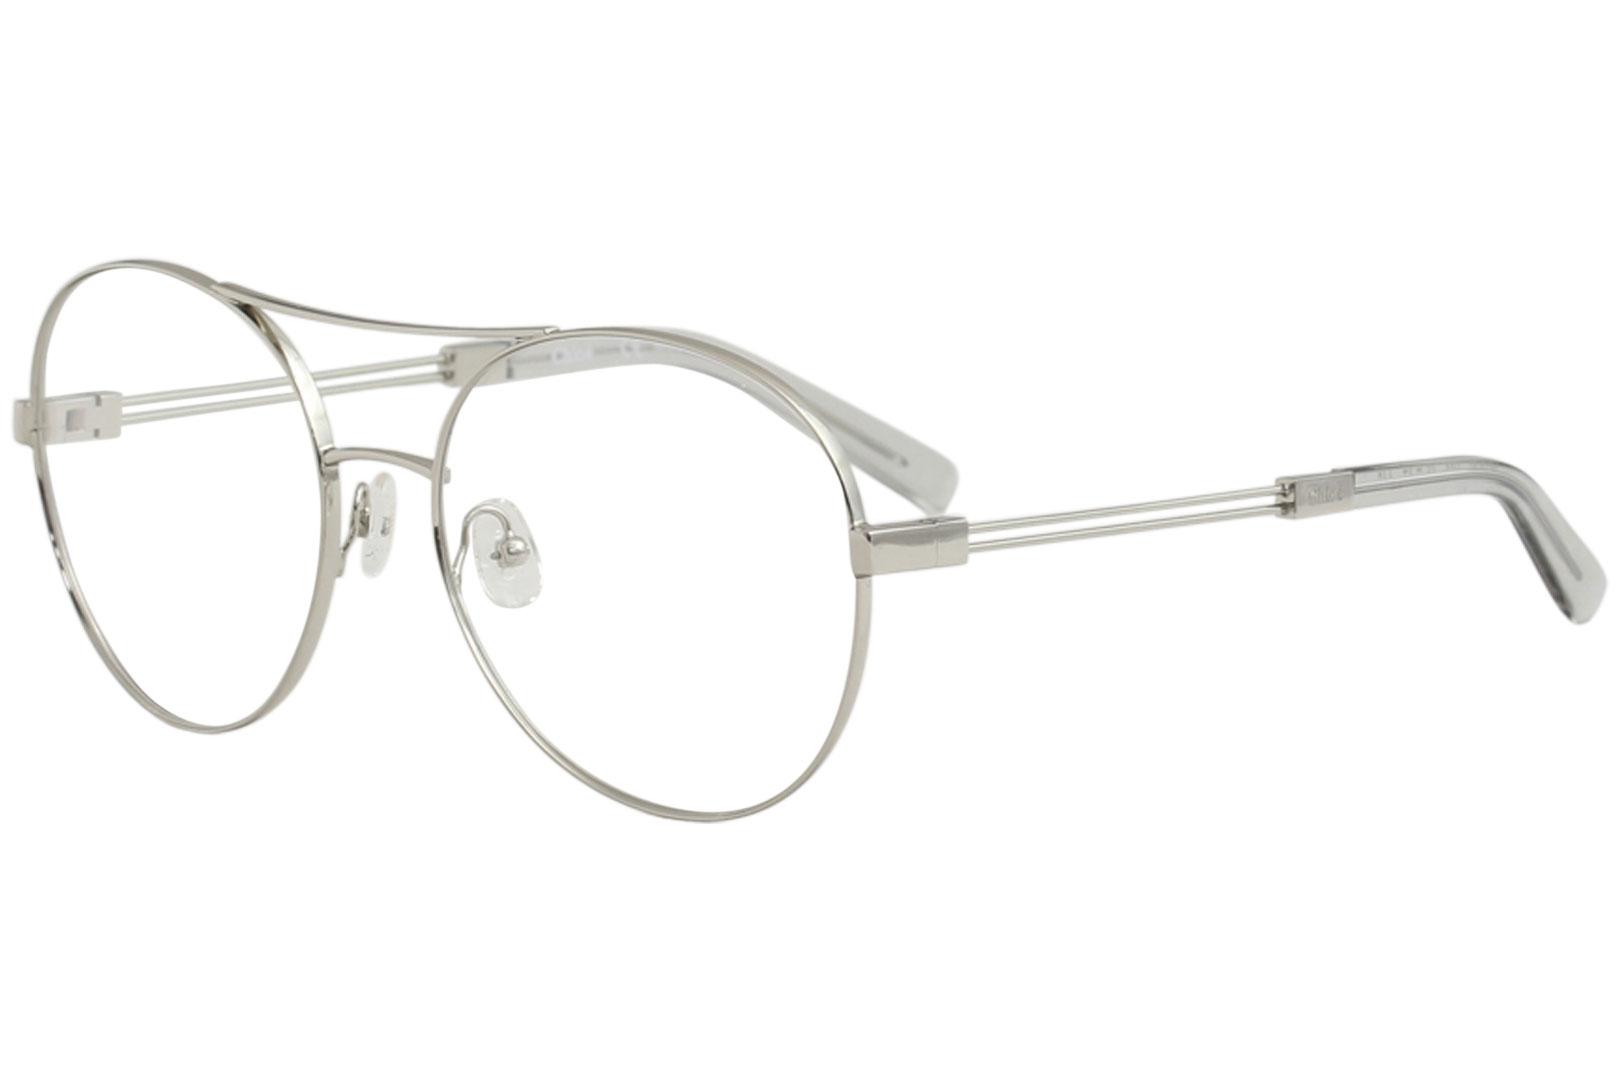 Chloe Women's Eyeglasses CE2130 CE/2130 Full Rim Optical Frame - Silver - Lens 55 Bridge 17 Temple 140mm